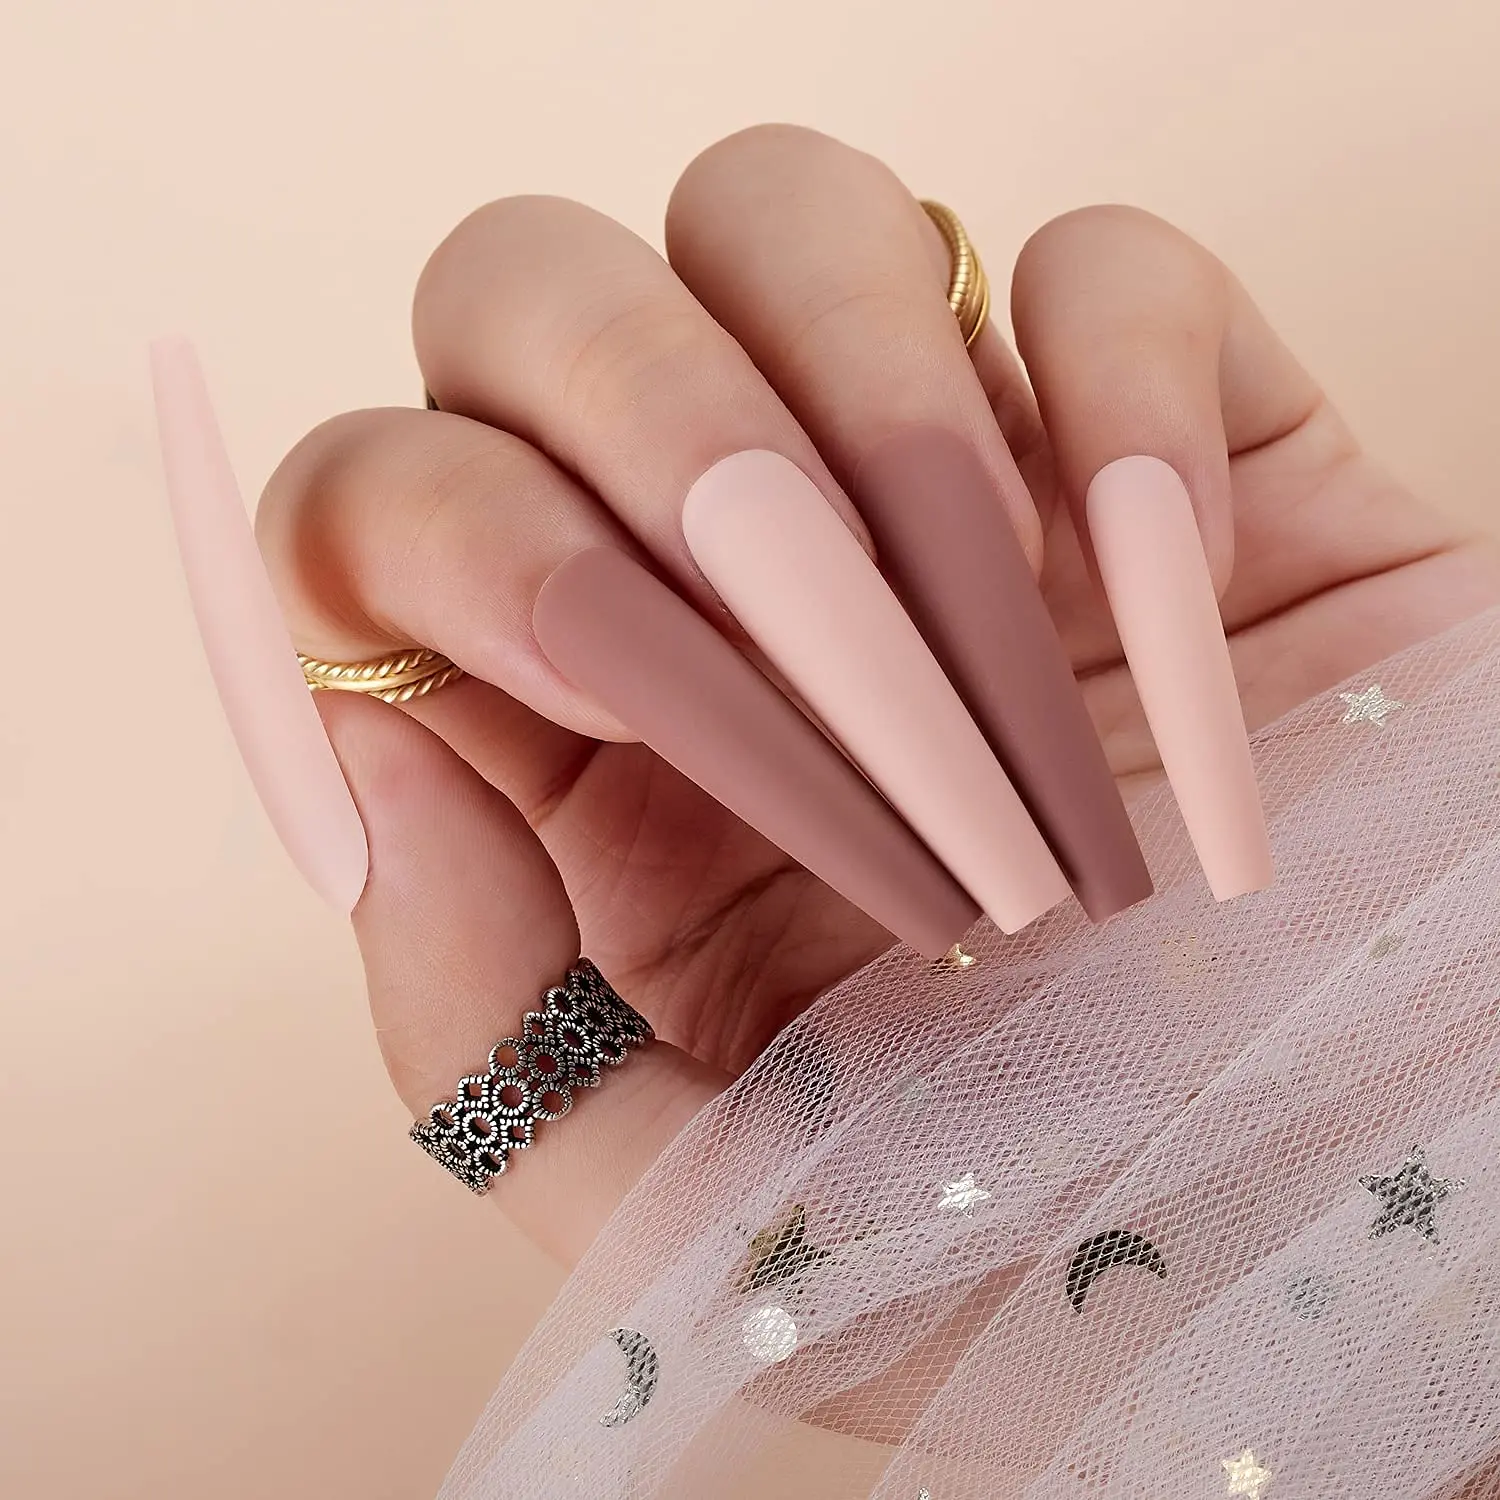 Makartt-Kit de uñas postizas francesas, uñas postizas XXL largas con pegamento, puntas acrílicas, Nude y rosa, 12 tamaños, 24 piezas